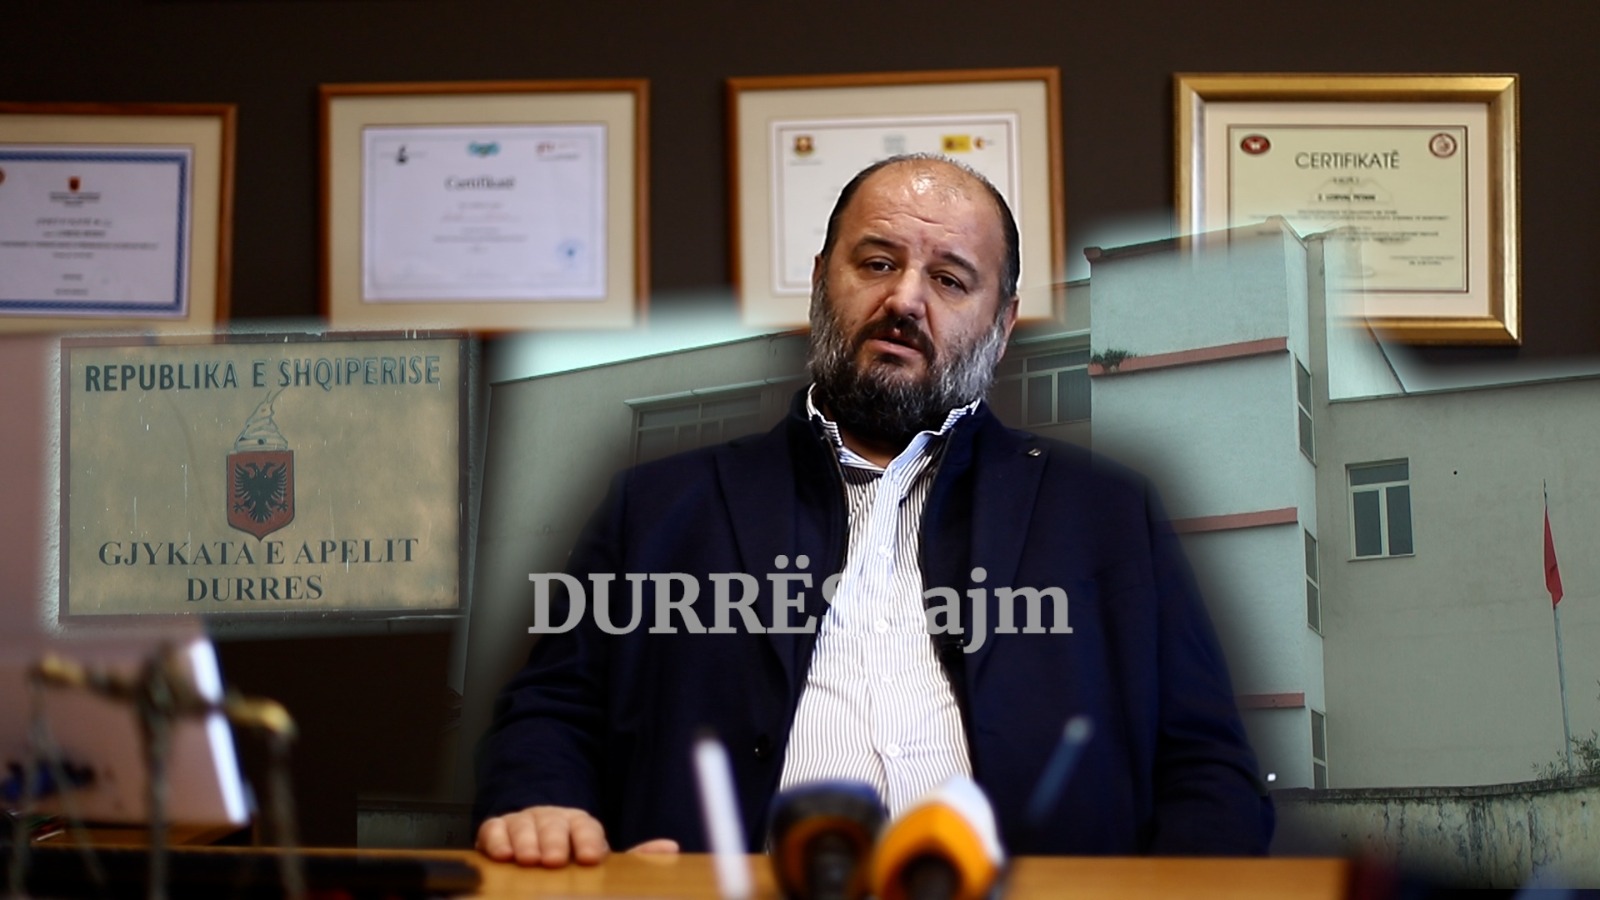 Nga sot Durrësi pa Gjykatë Apeli, Petani: Do duhen 5 vite për një vendim (VIDEO)